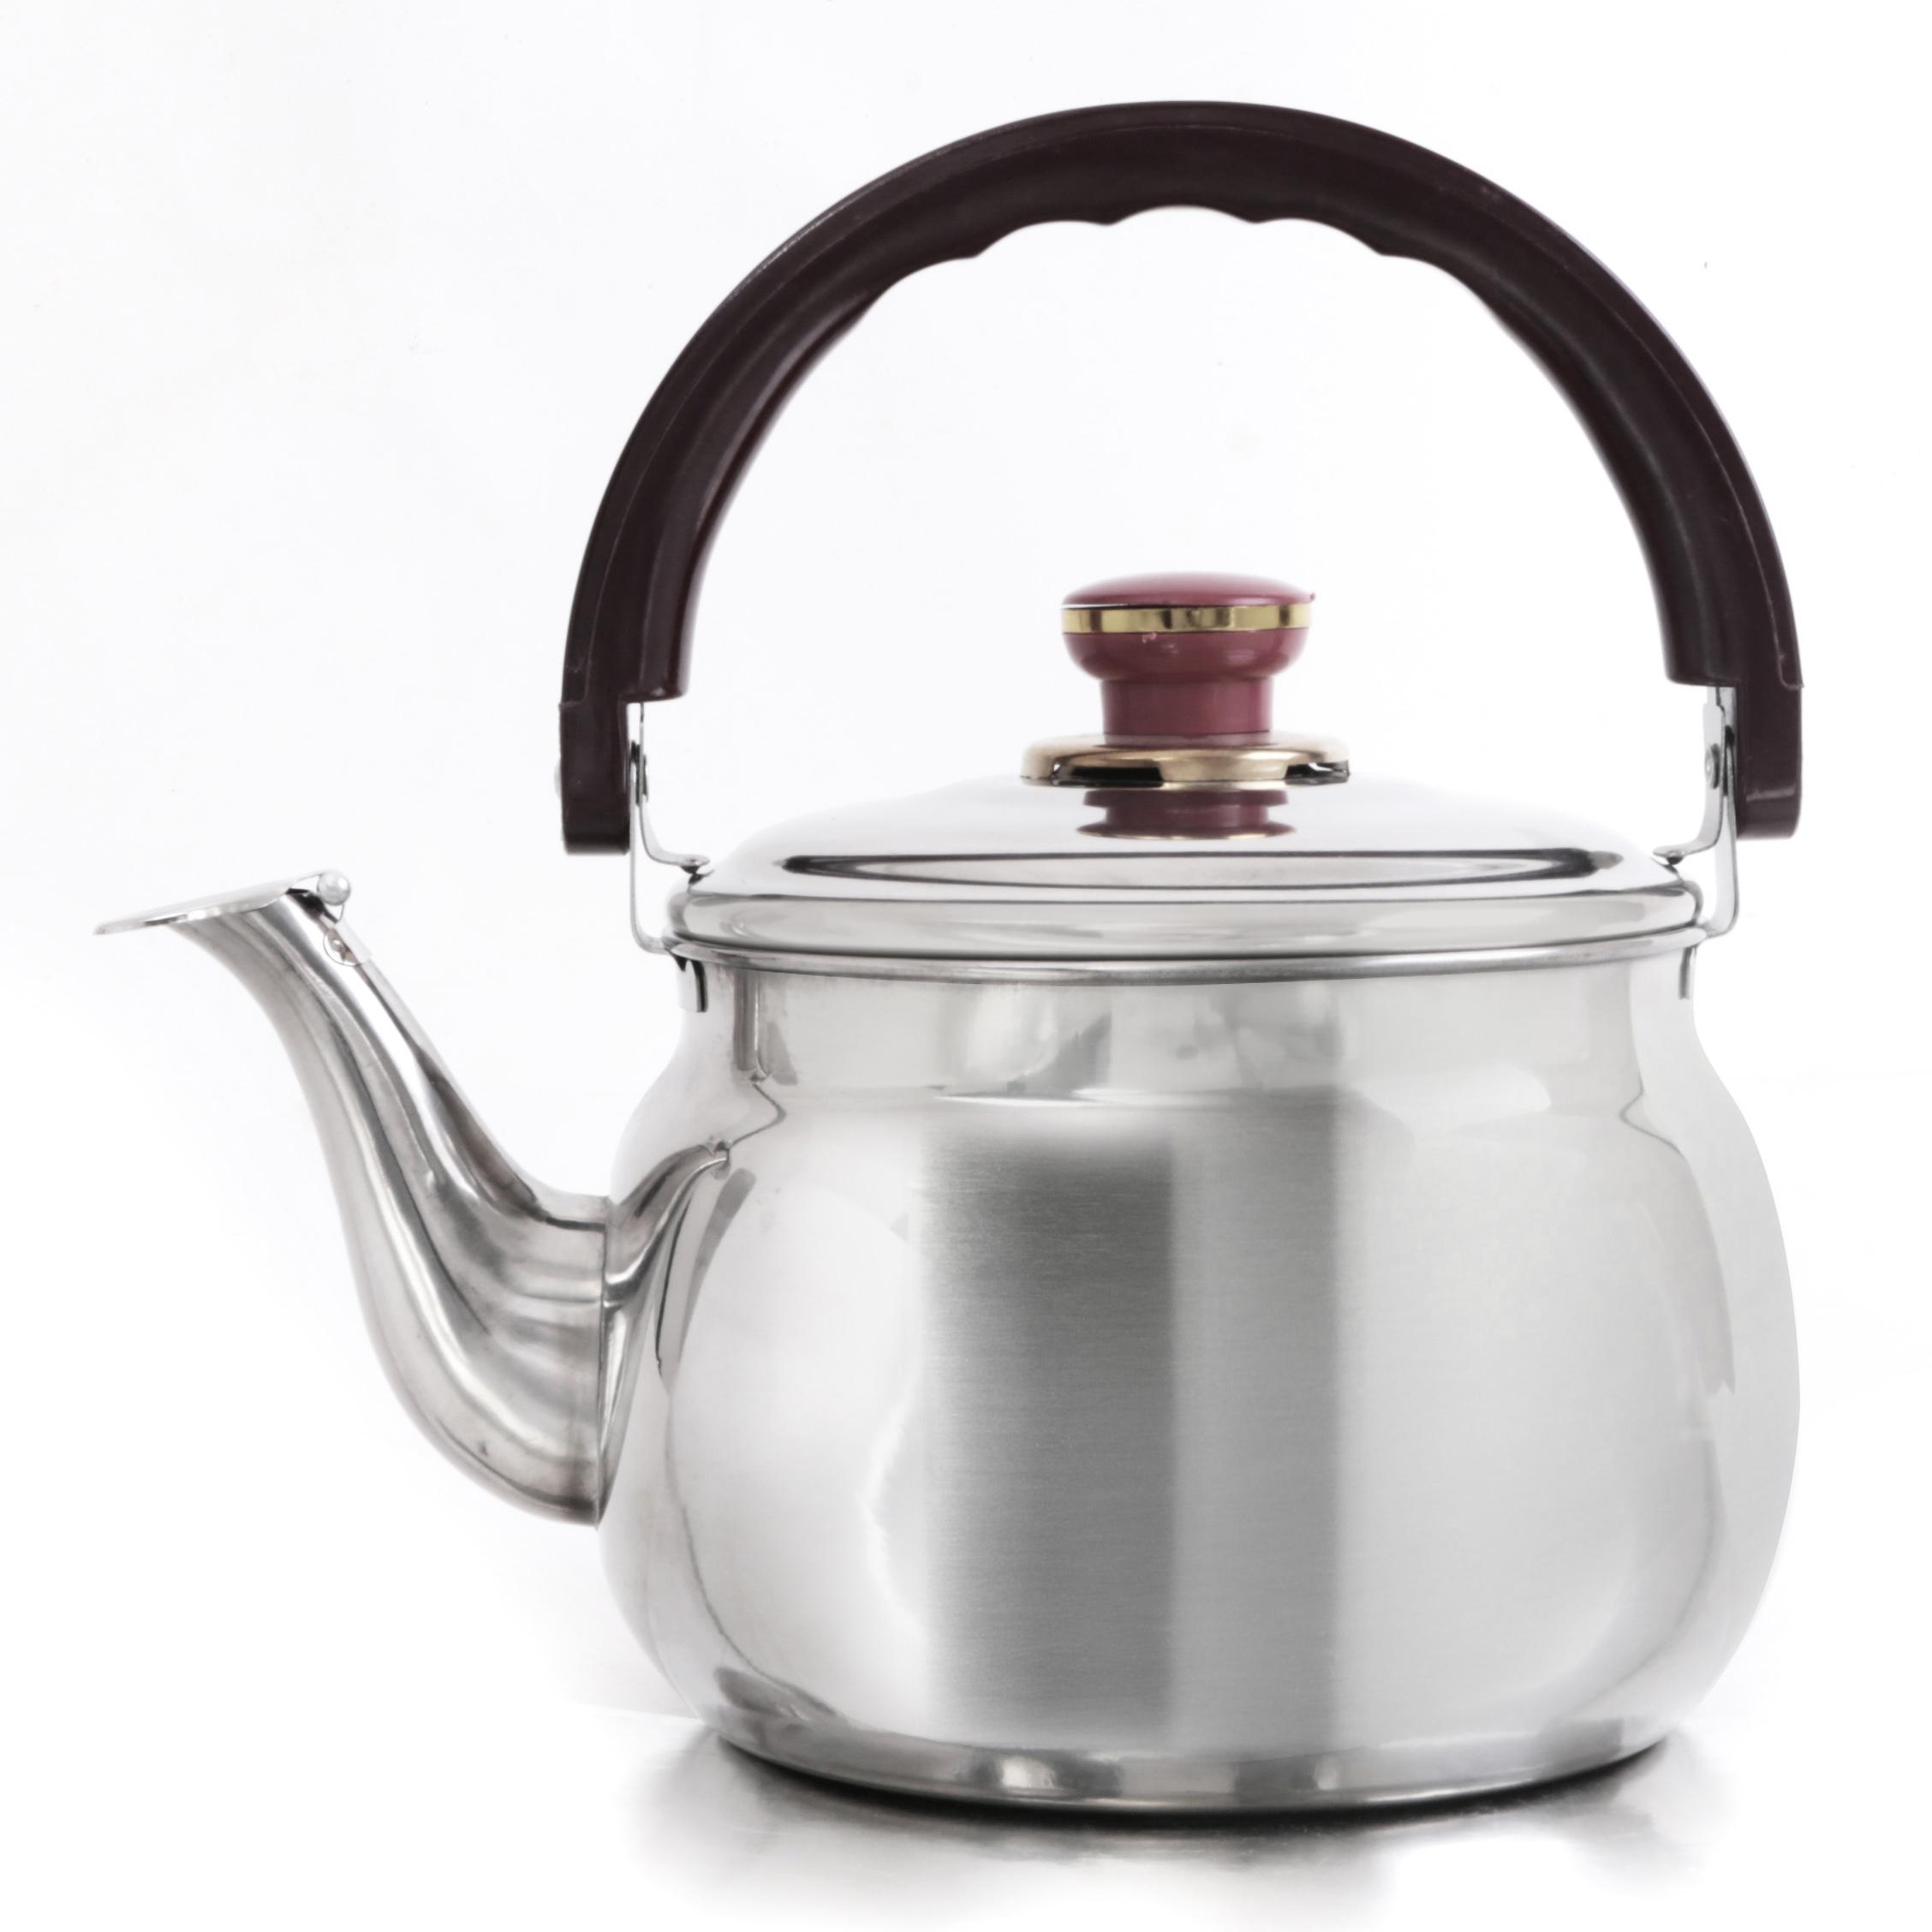 ابريق شاي ( 2.7 لتر ) - فضي Royalford -  Stainless Steel Kettle Portable Whistling Tea Kettle